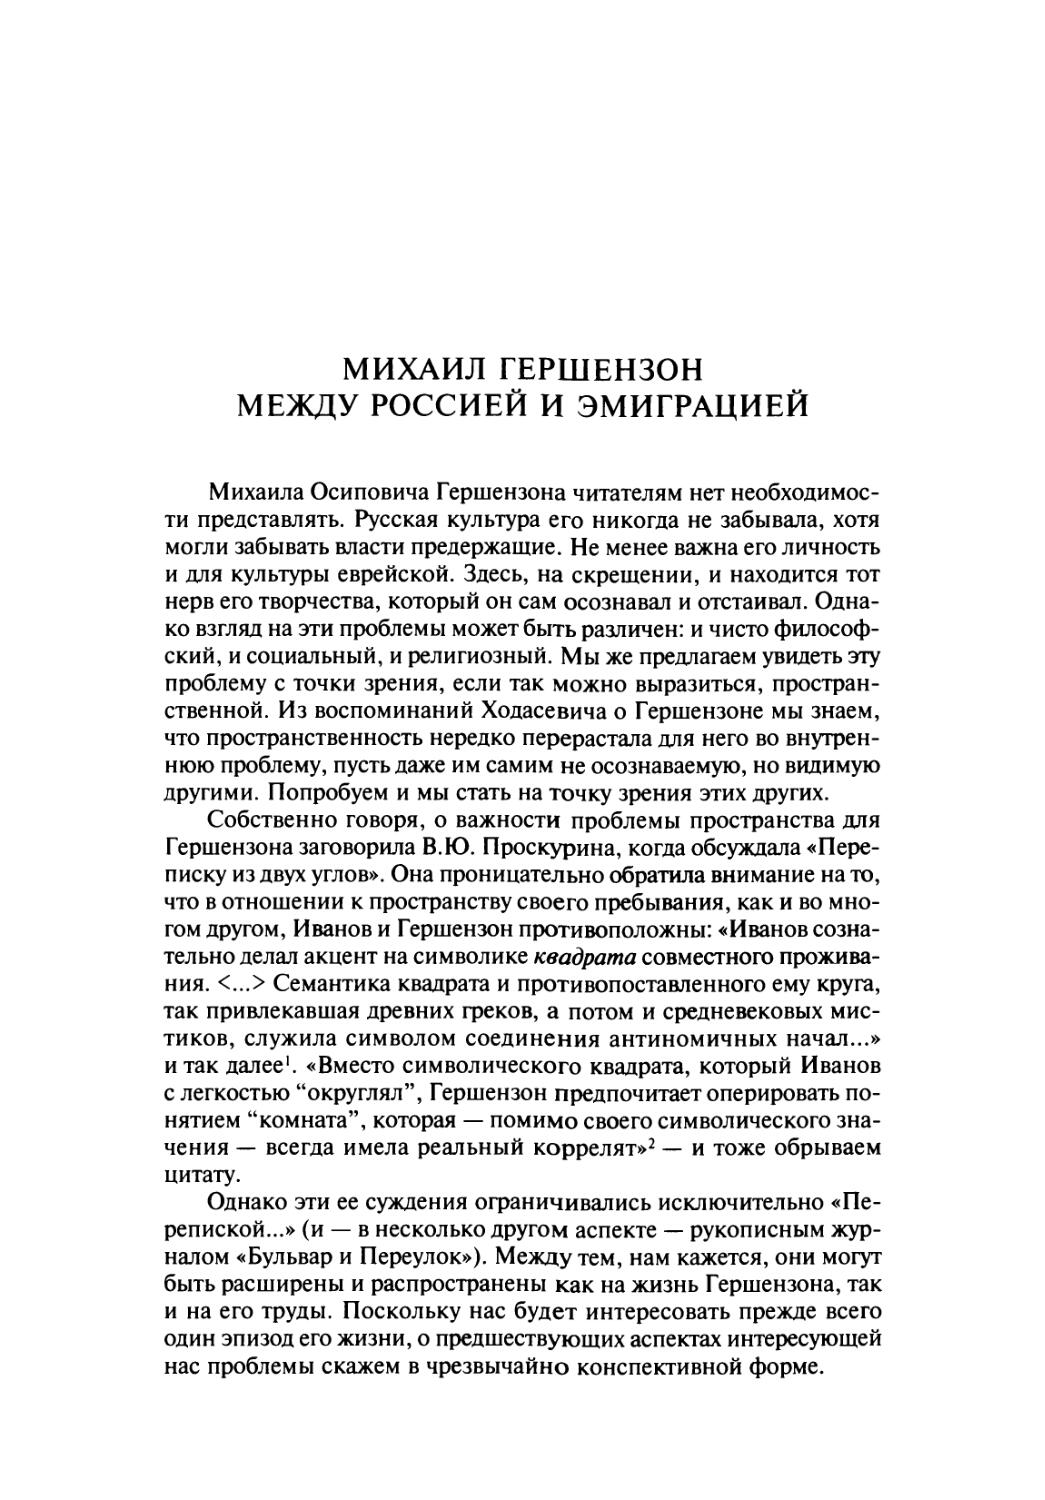 Михаил Гершензон между Россией и эмиграцией